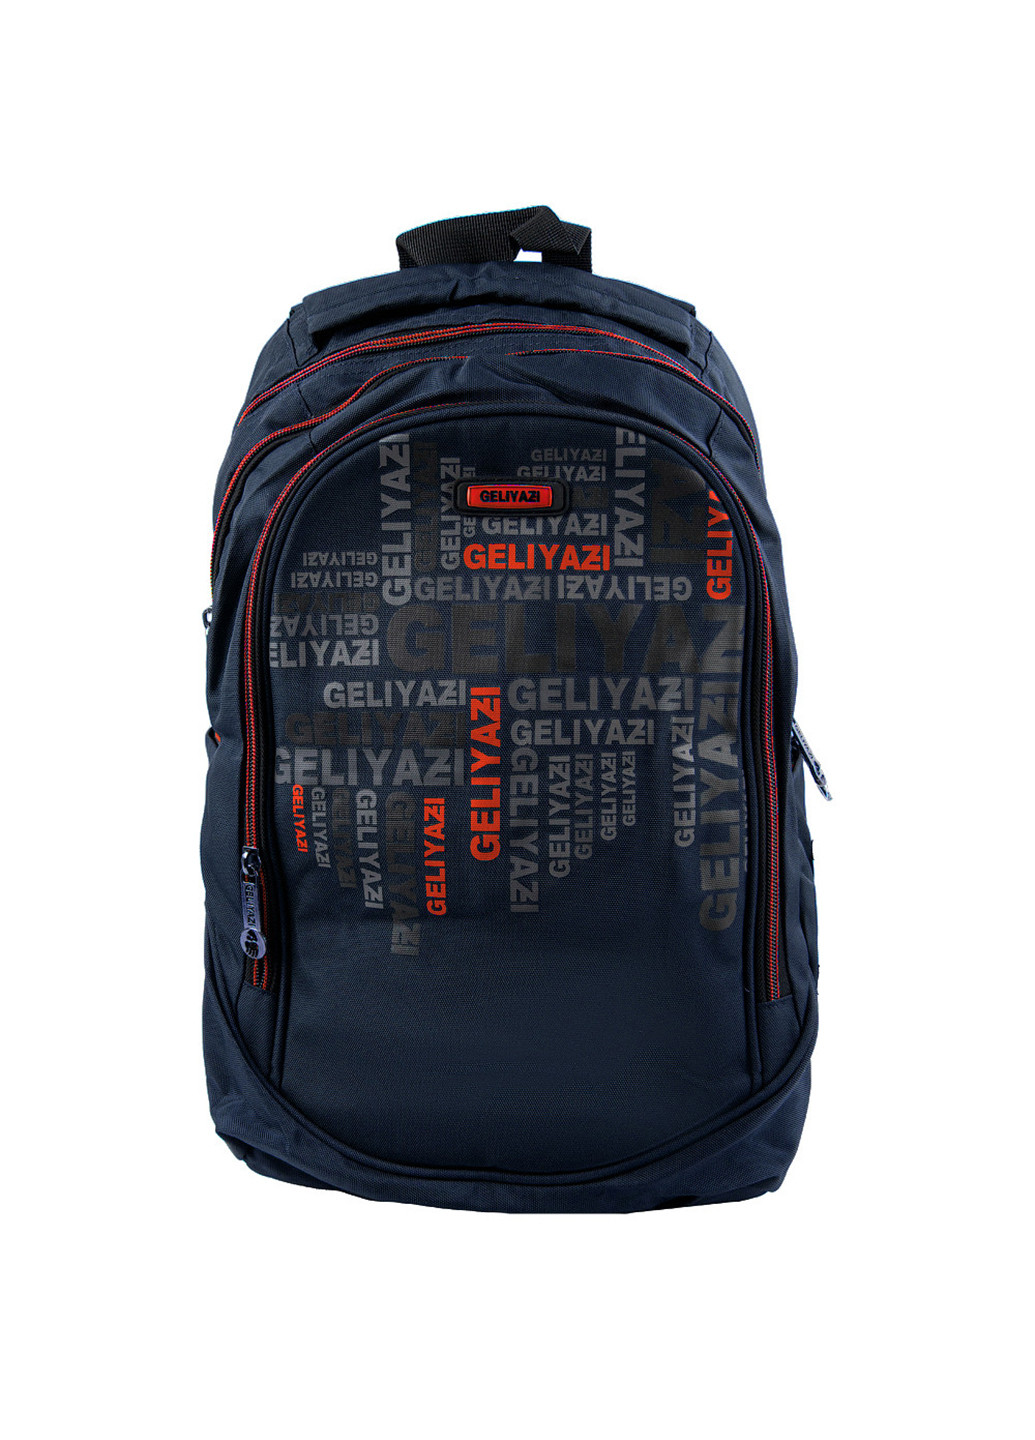 Мужской спортивный рюкзак 29х41,5х20 см Valiria Fashion (253027747)